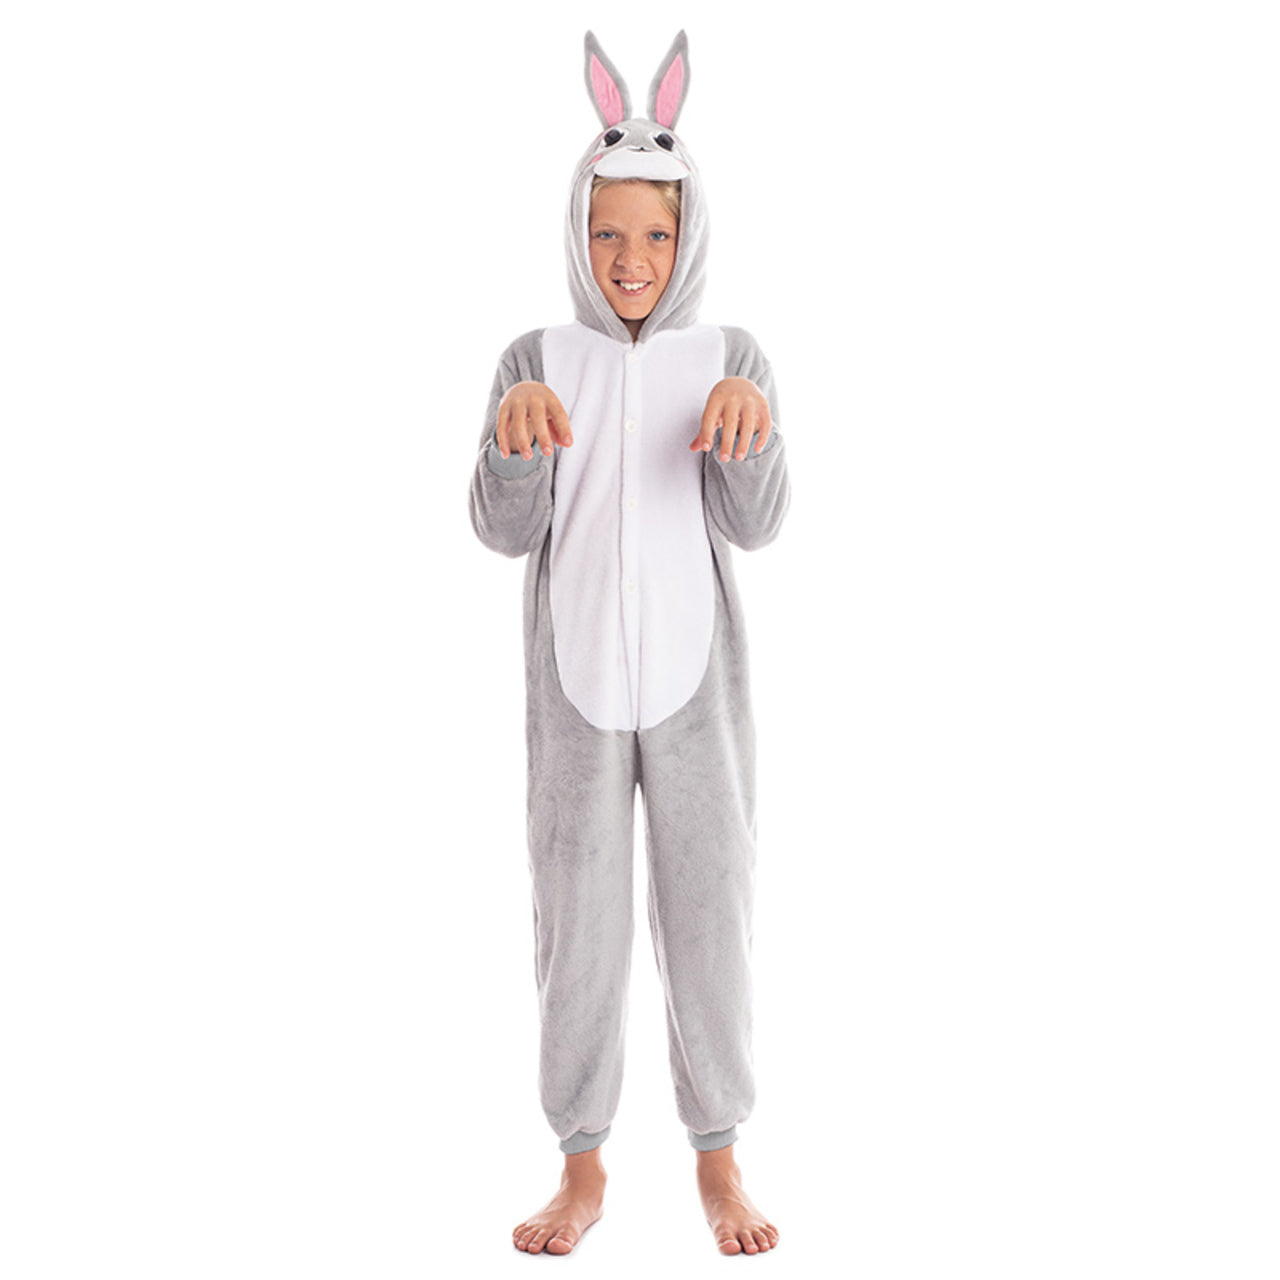 Acquista online costume da coniglio grigio infantile